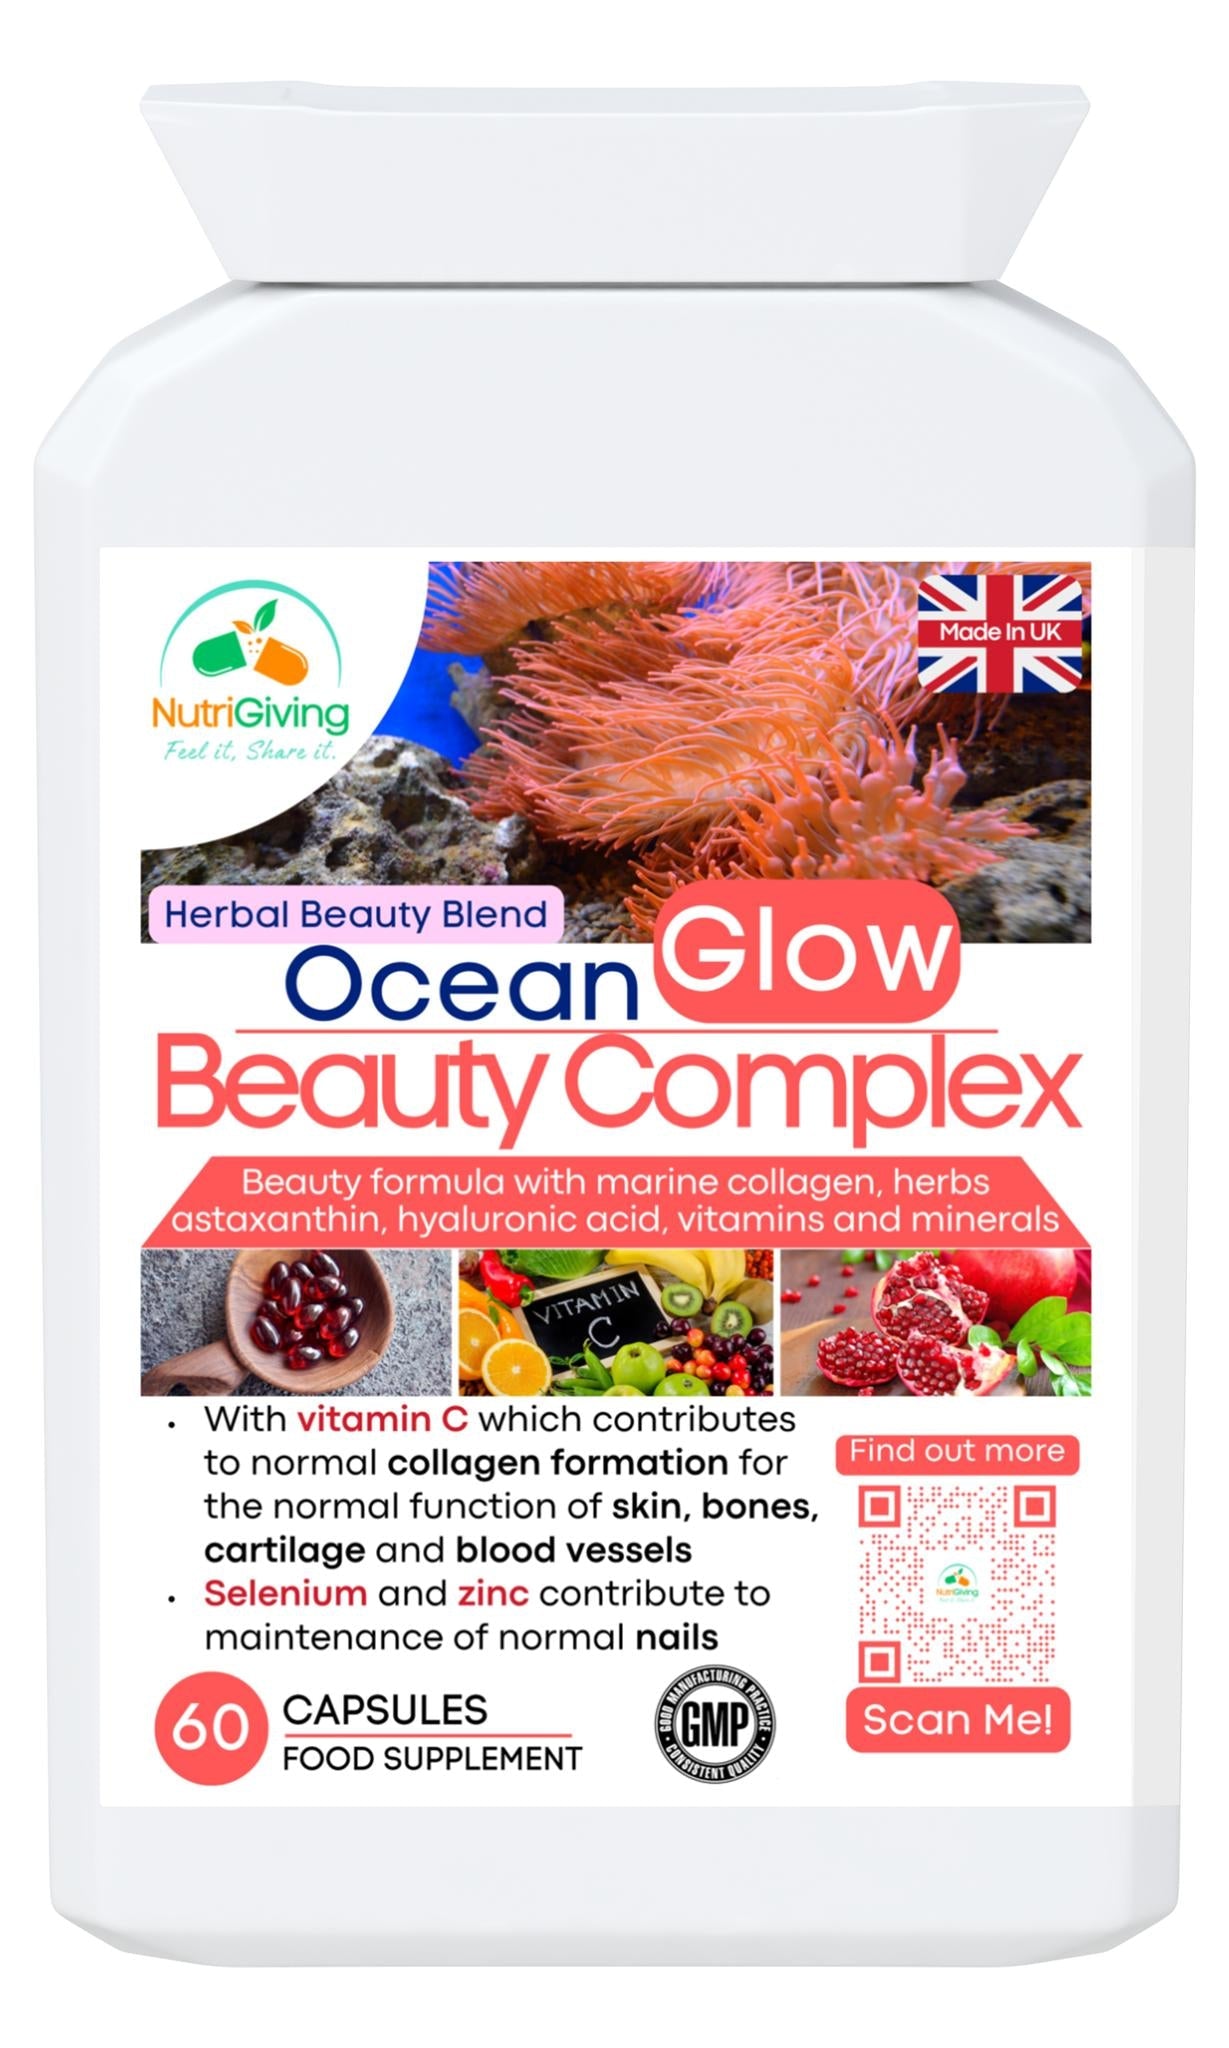 OceanGlow Beauty Complex